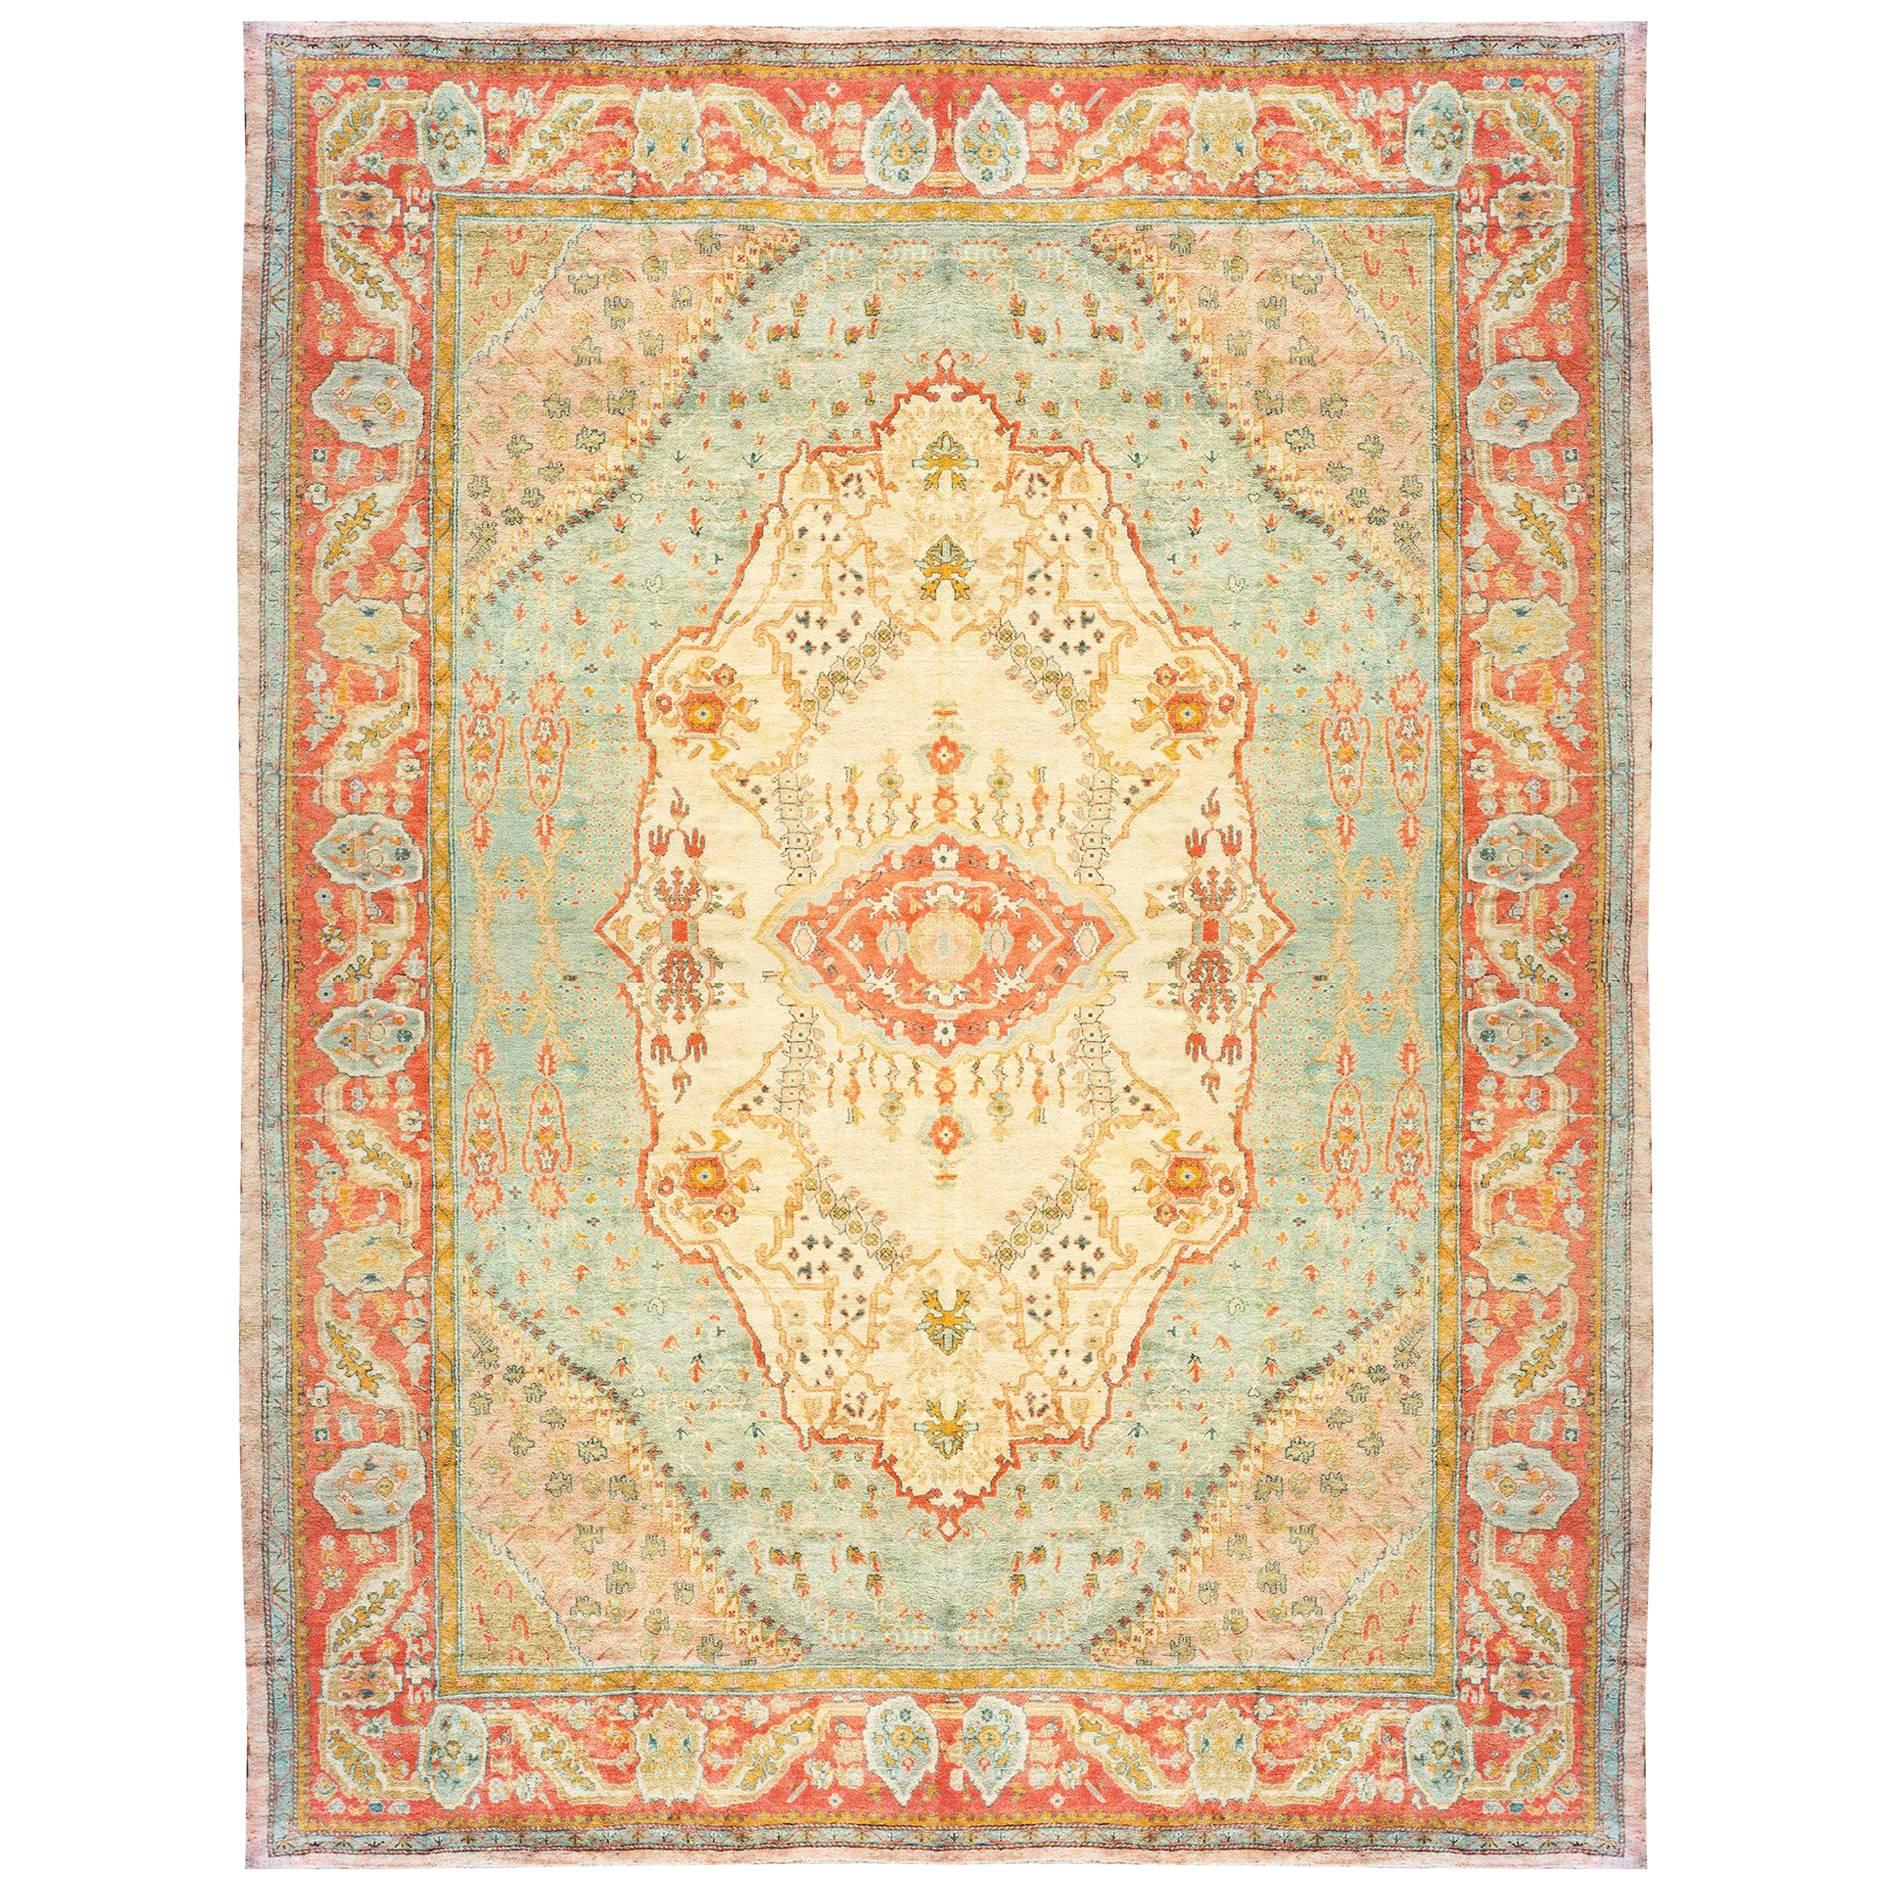 Antiker türkischer Oushak- orientalischer Teppich, Herrenhausgröße, mit Medaillon und weichen Farben